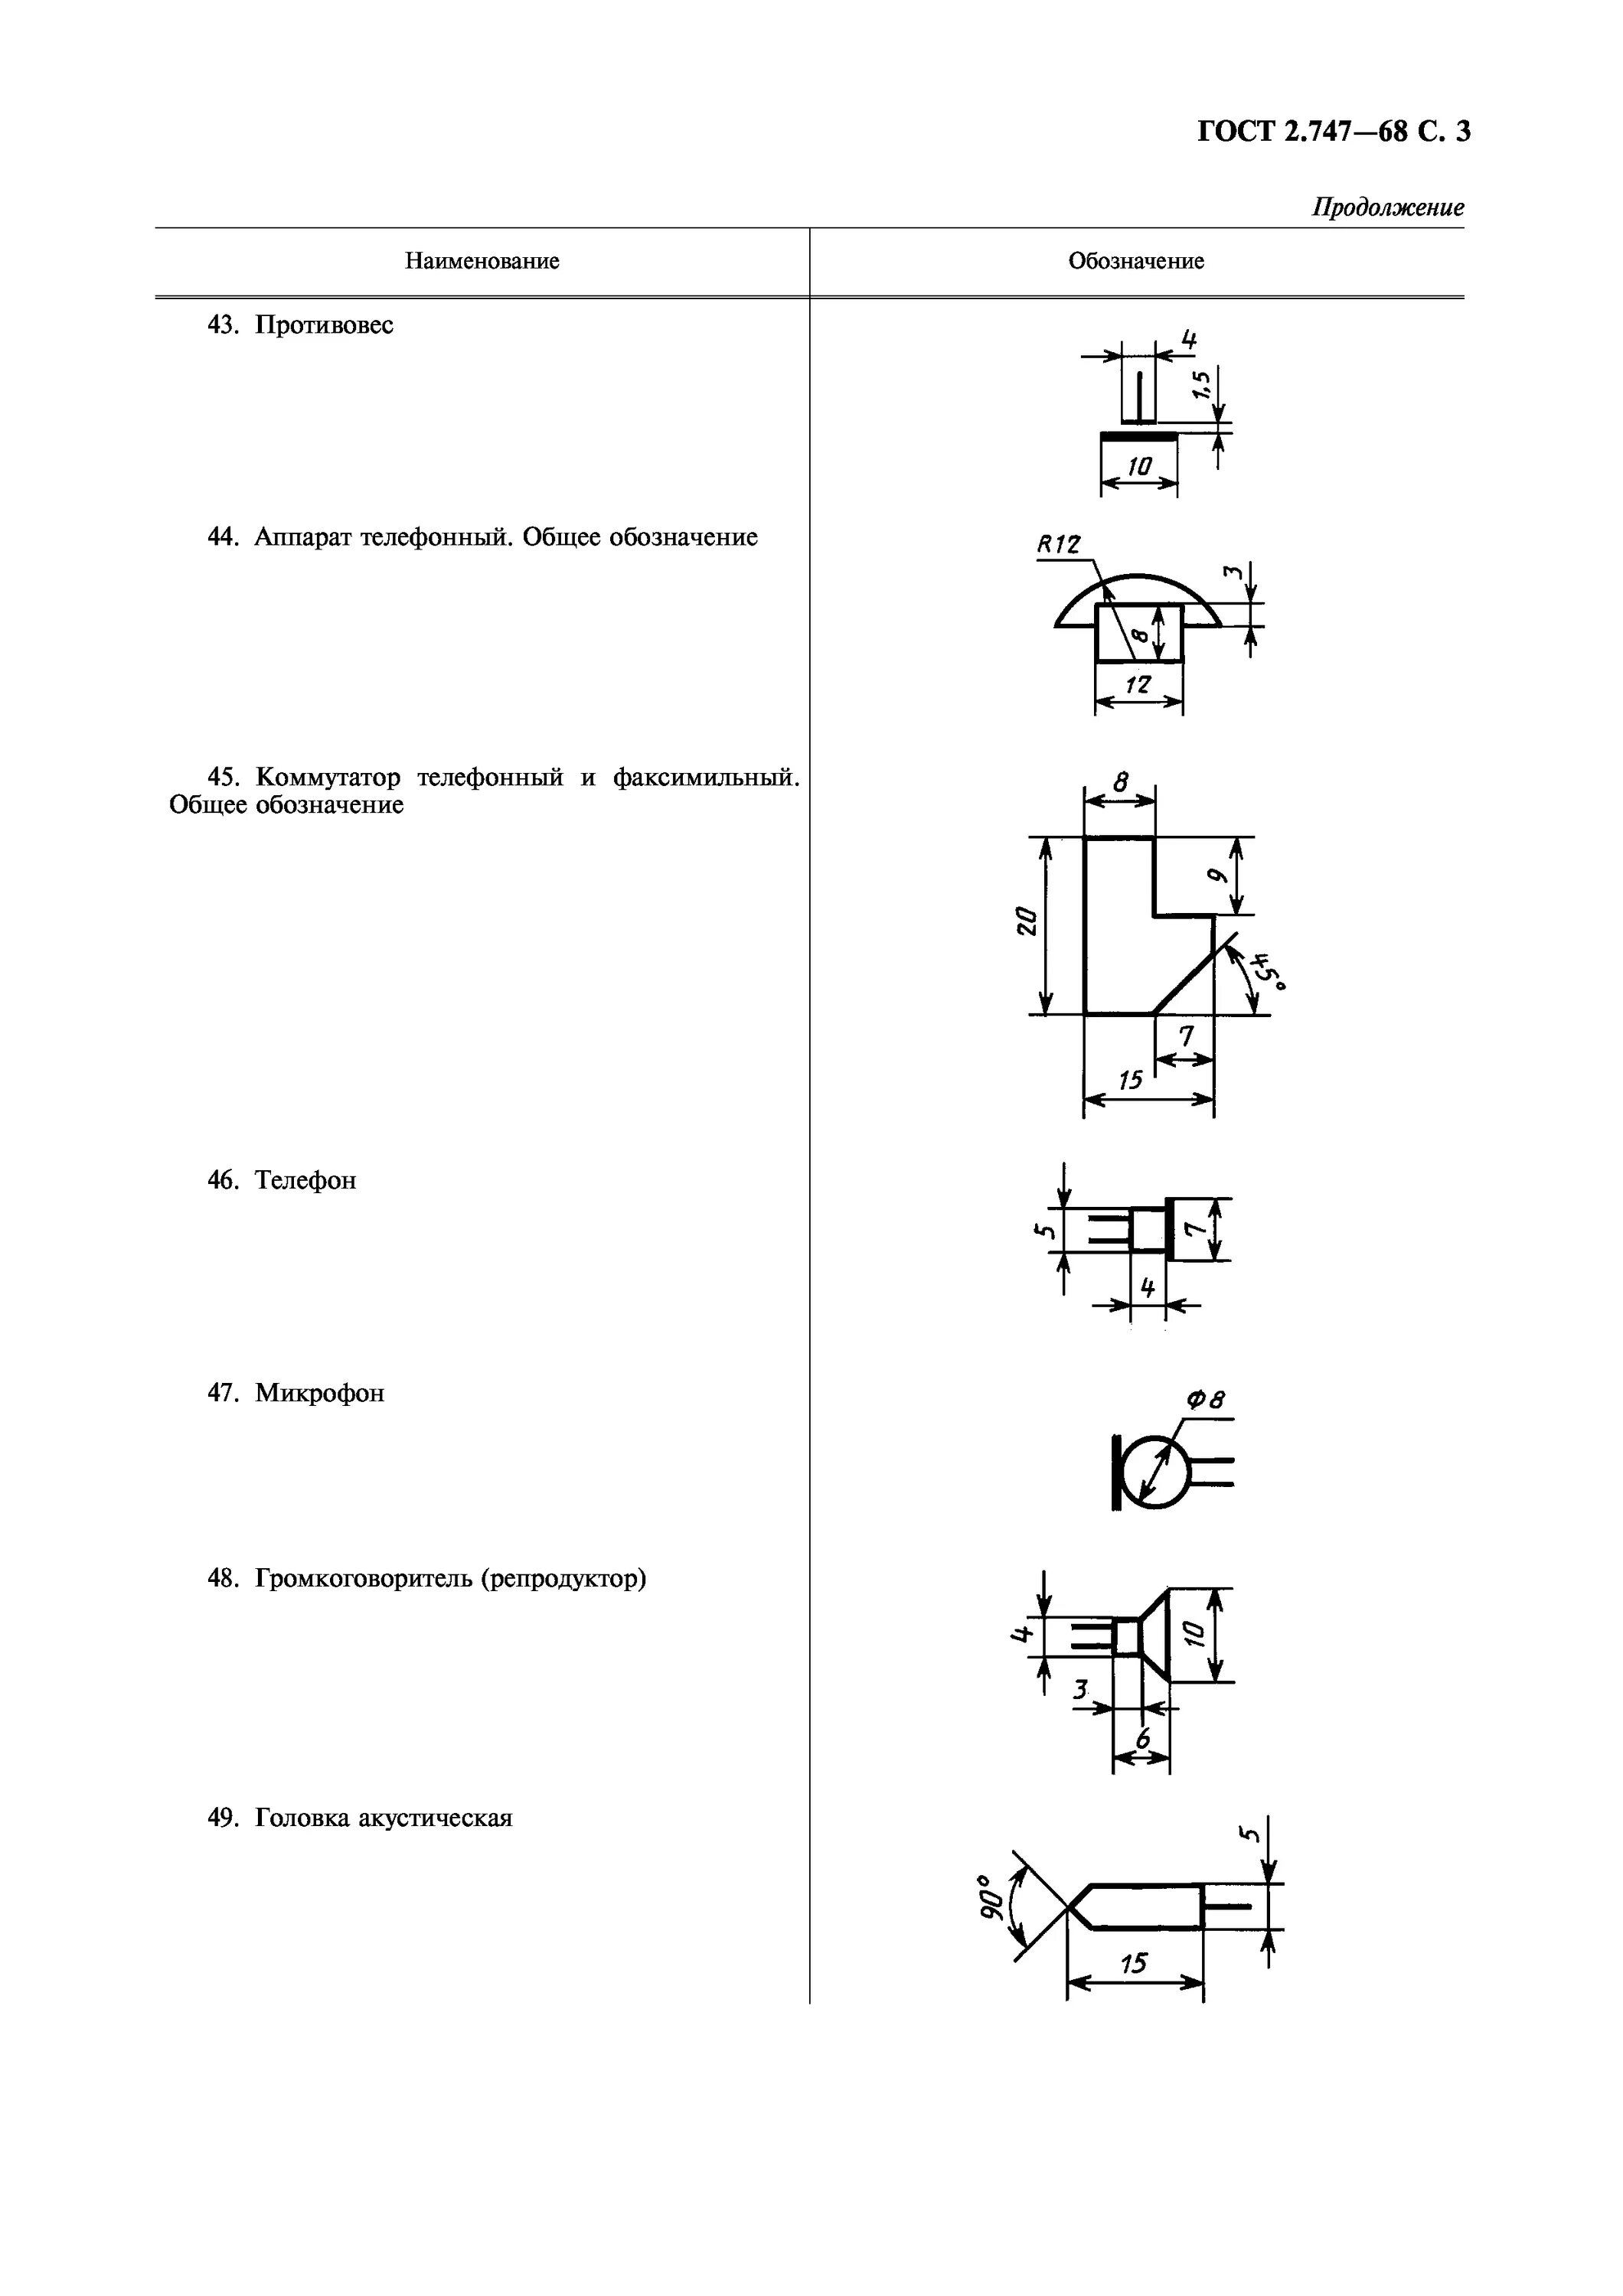 Уго радиоэлементов ГОСТ. ГОСТ 2.747-68 обозначения условные графические в схемах. Обозначение радиоэлементов на схеме ГОСТ. ЕСКД Уго на электрических схемах обозначается .